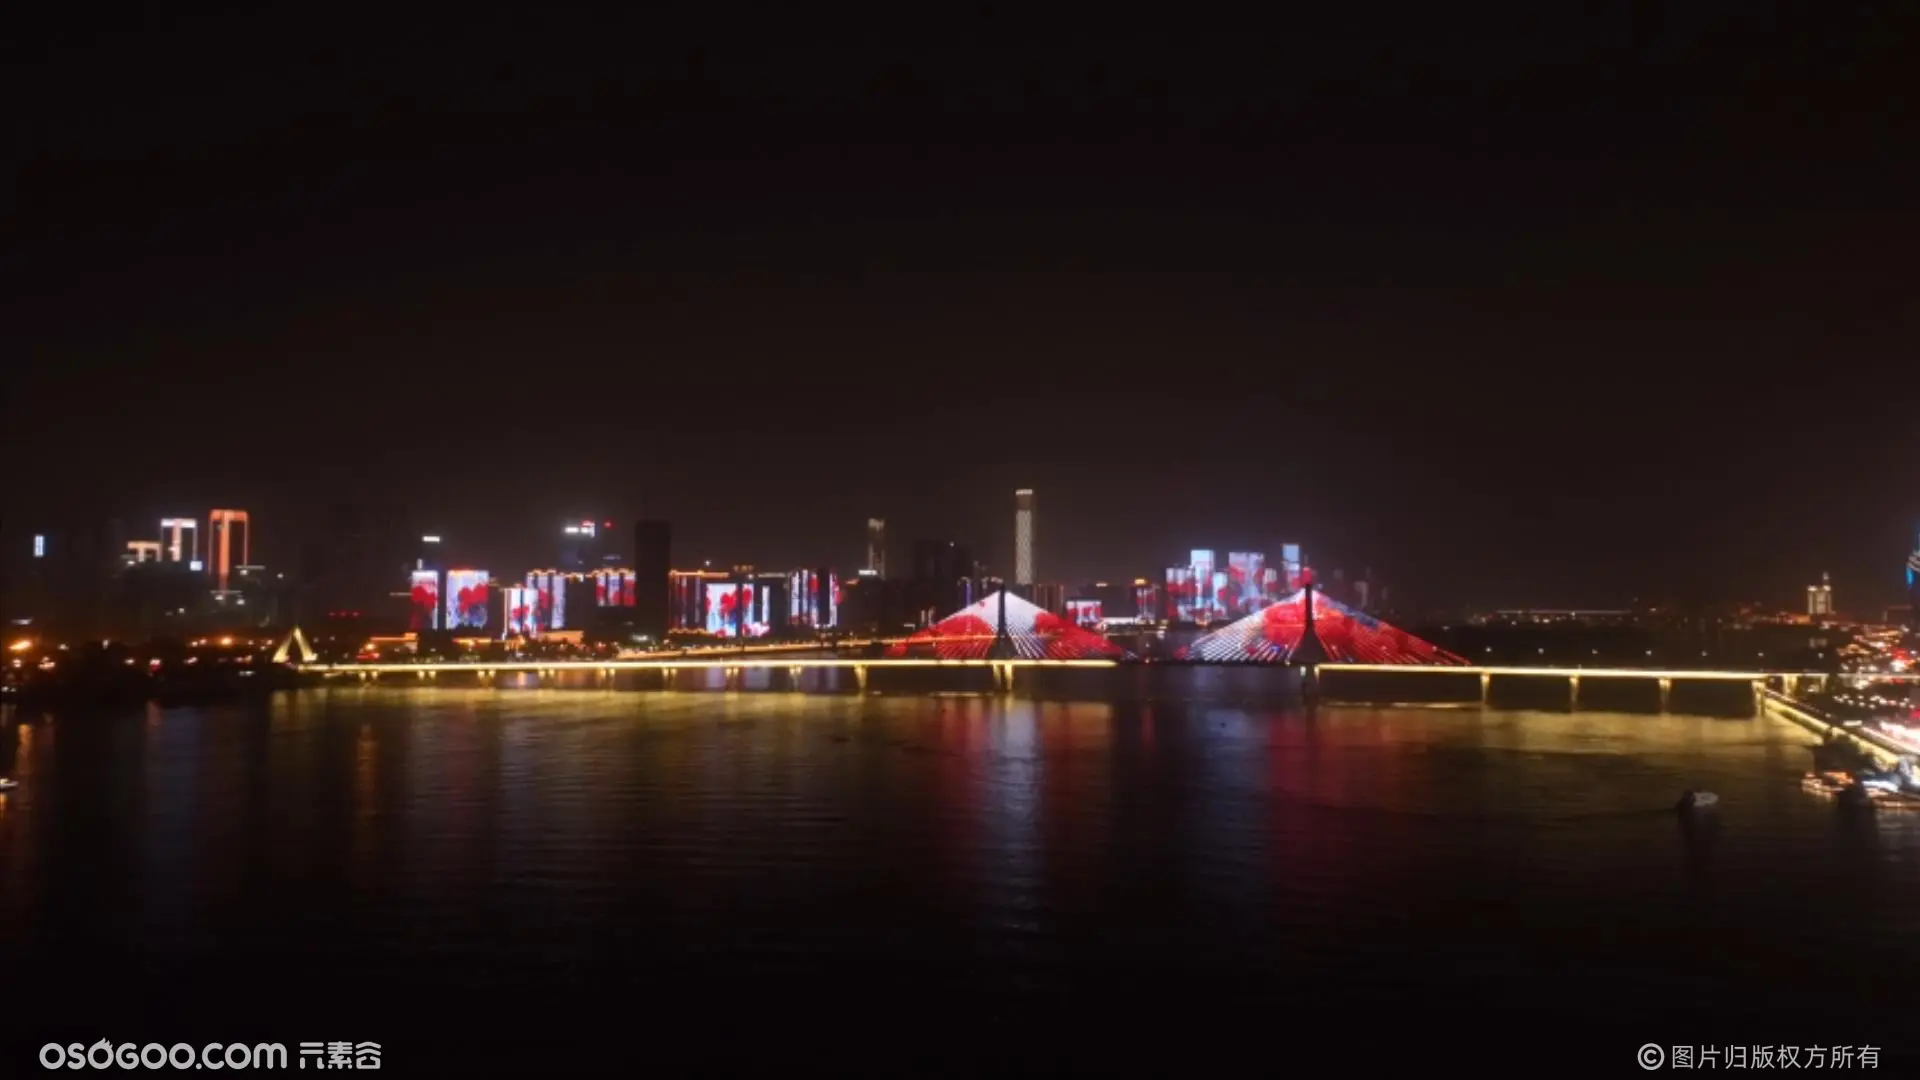 燕京啤酒，草莓苹果节，300台无人机表演长沙渔人码头完美呈现